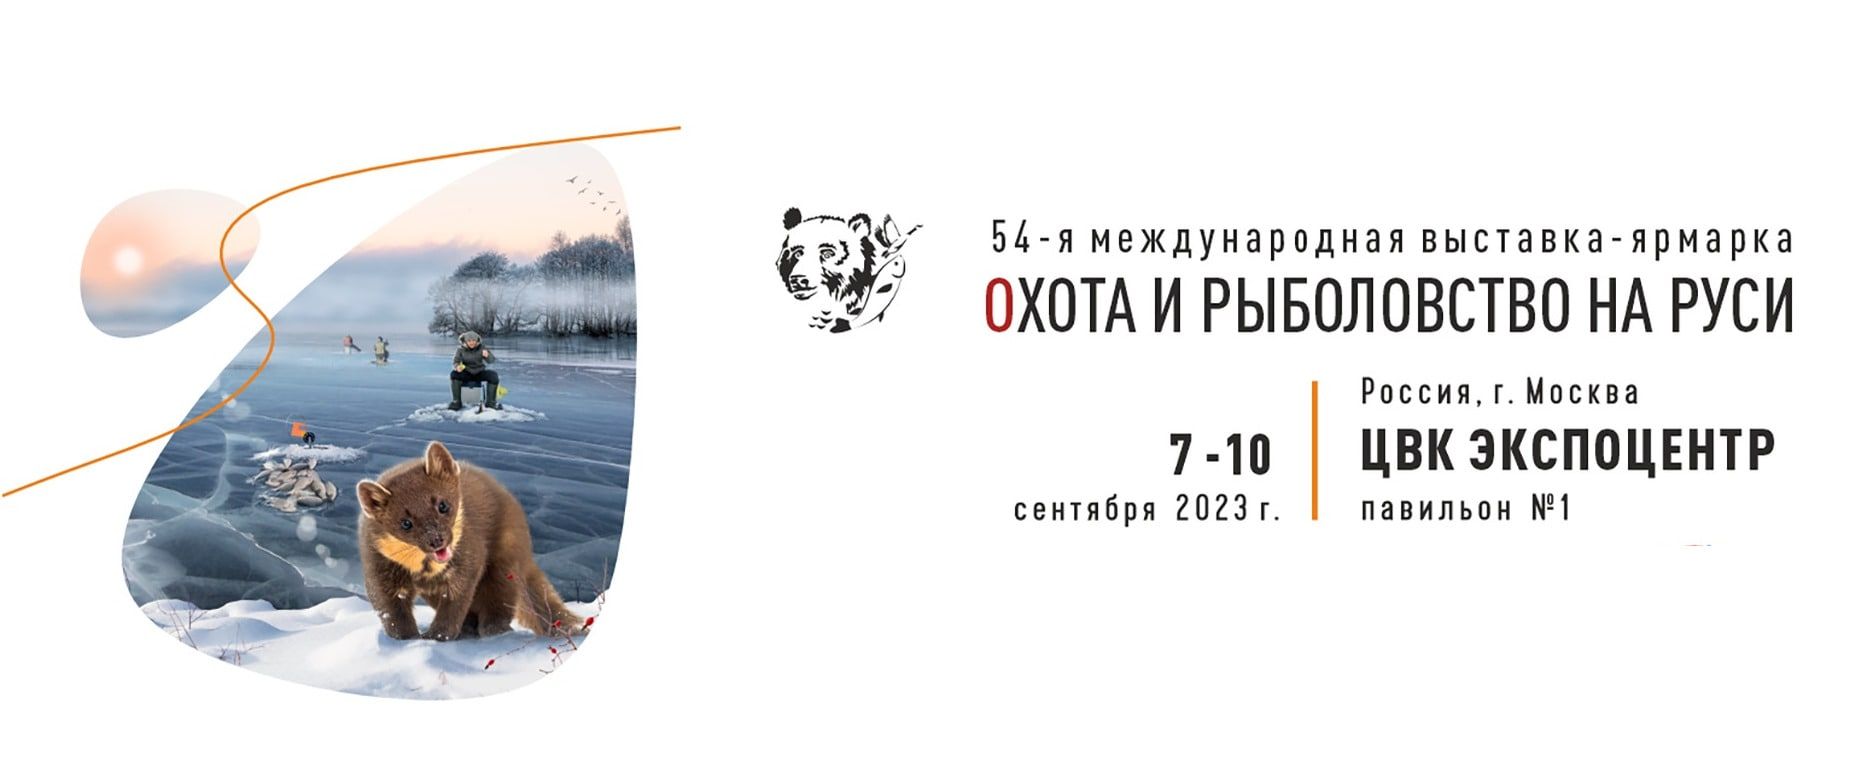 Всем рыбы и зрелищ! Приглашаем на 54-ую международную выставку-ярмарку «Охота и рыболовство на Руси»